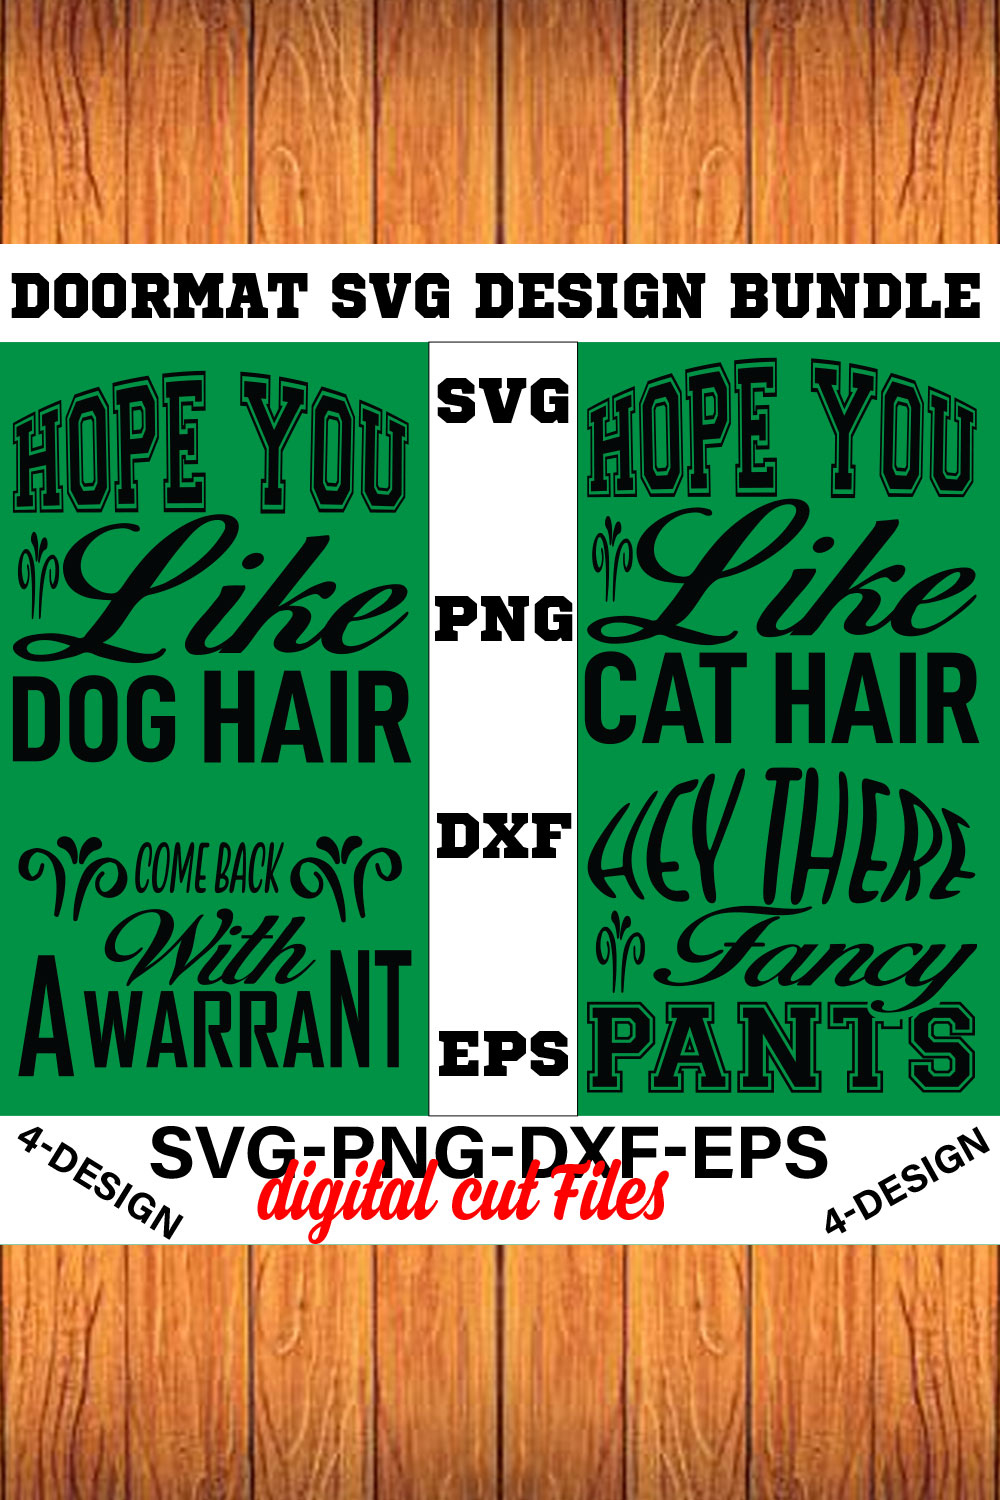 Doormat Quote Designs SVG Cut File Bundle for Cricut Volume-04 pinterest preview image.